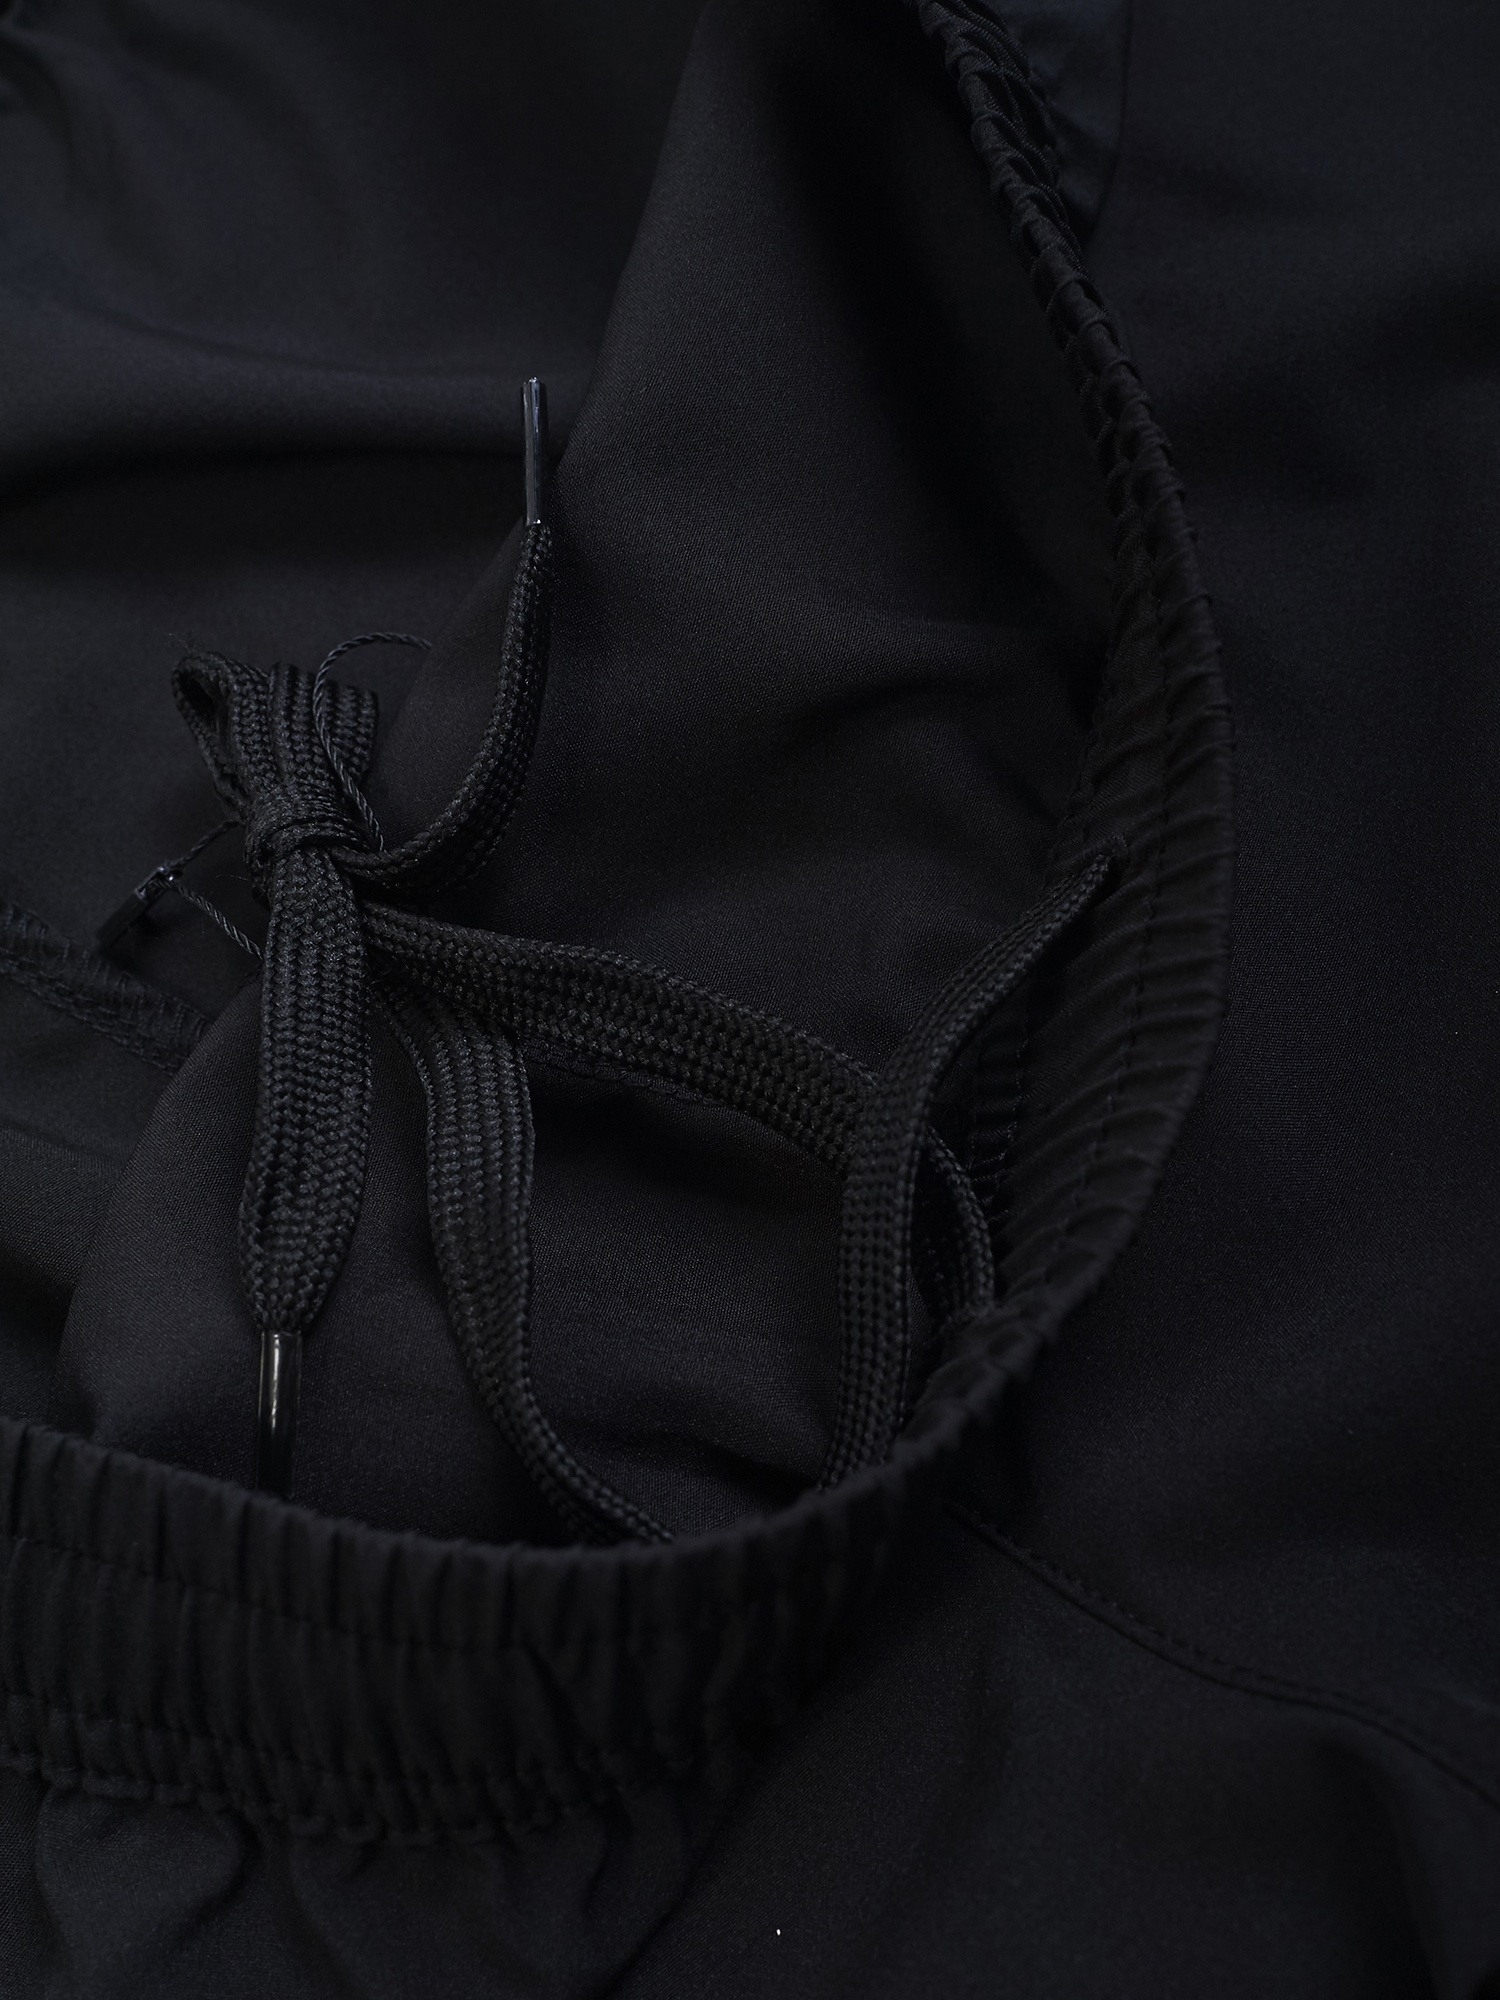 MANTO active shorts SPORT black | CLOTHING \ SHORTS/TIGHTS | Top ...